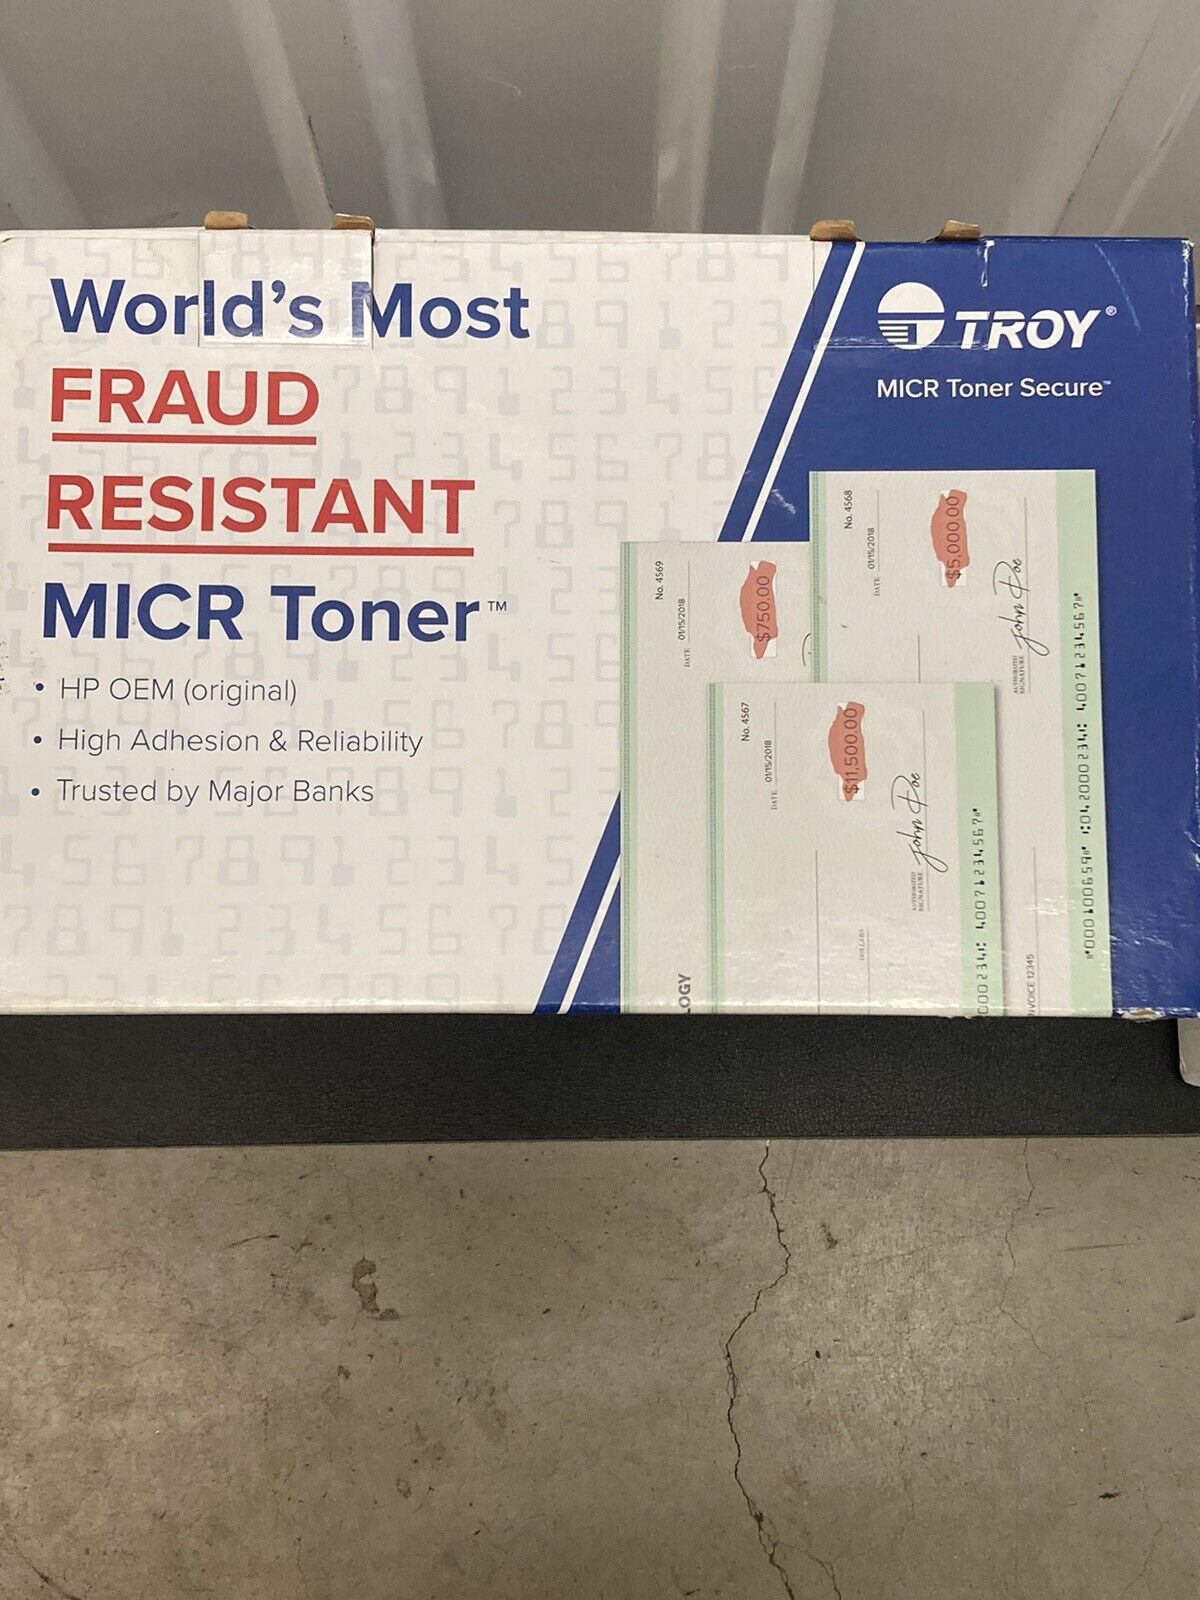 TROY Fraud Resistant MICR Toner Secure Cartridge HP troy fraud 02-81585-001